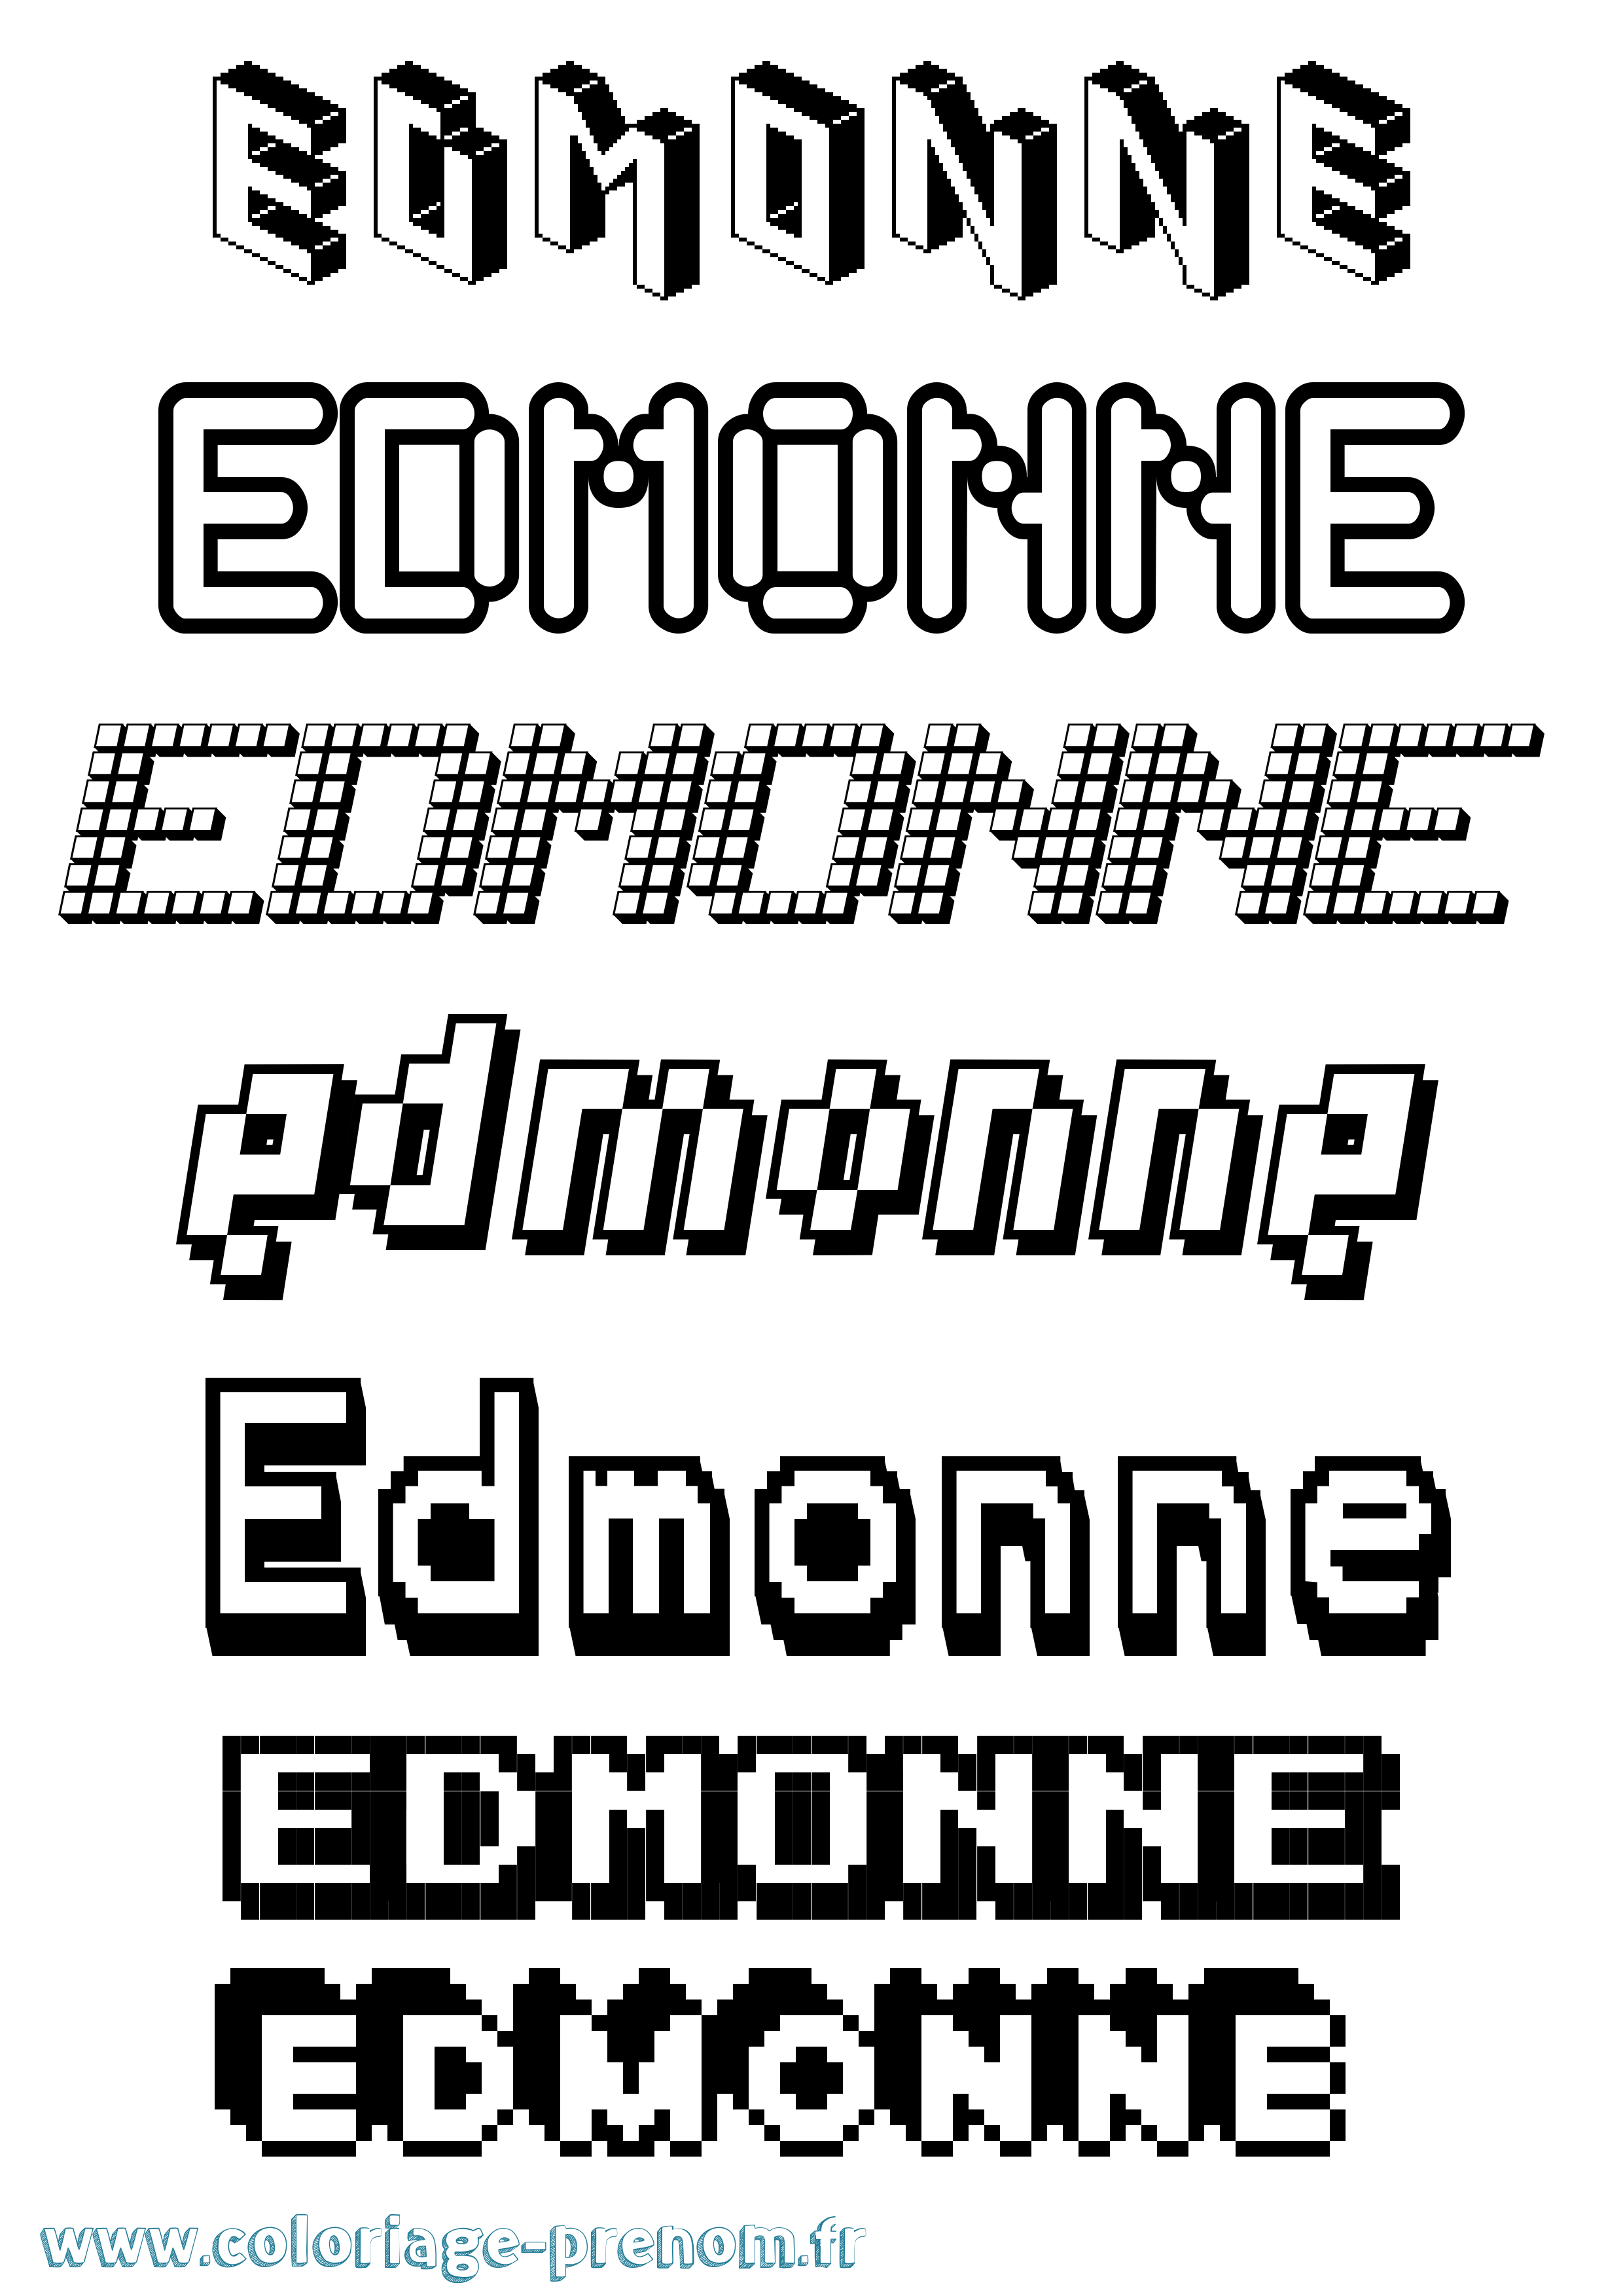 Coloriage prénom Edmonne Pixel